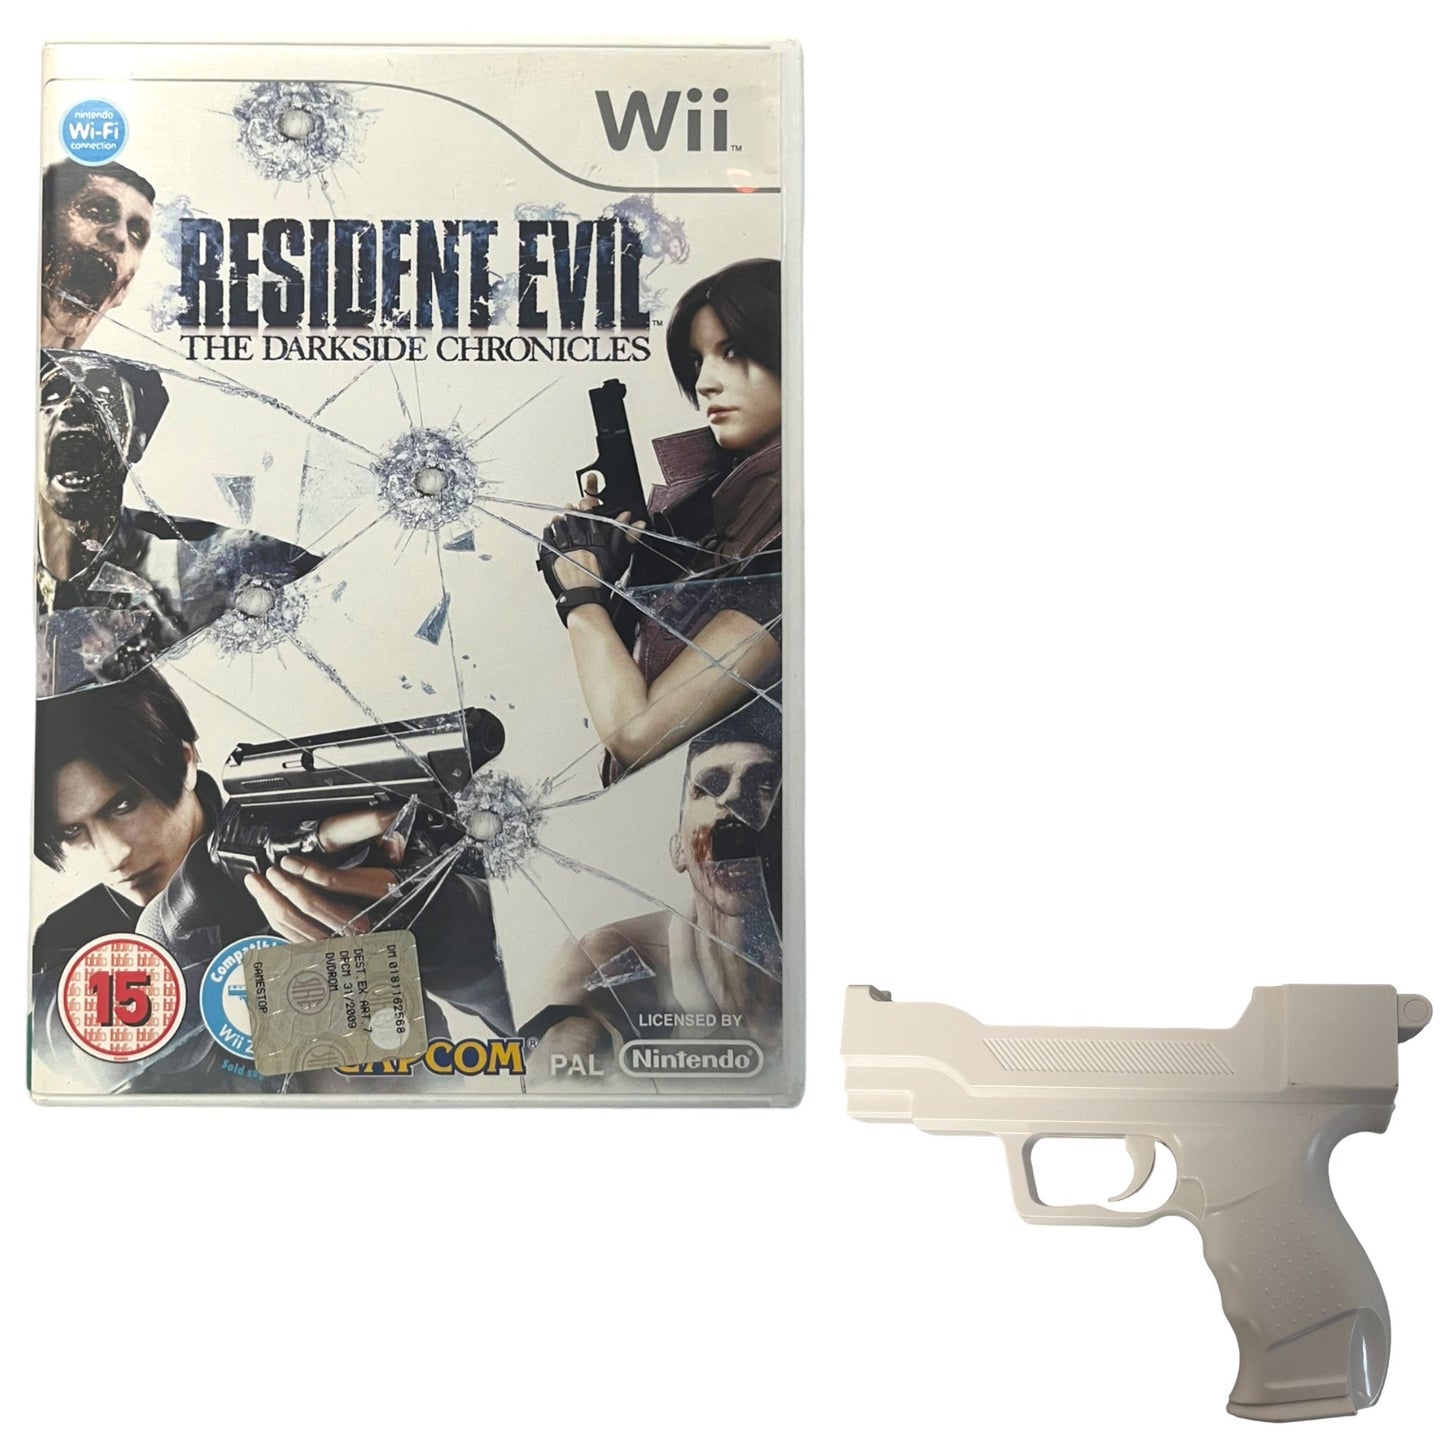 Resident Evil: The Darkside Chronicles + Gun